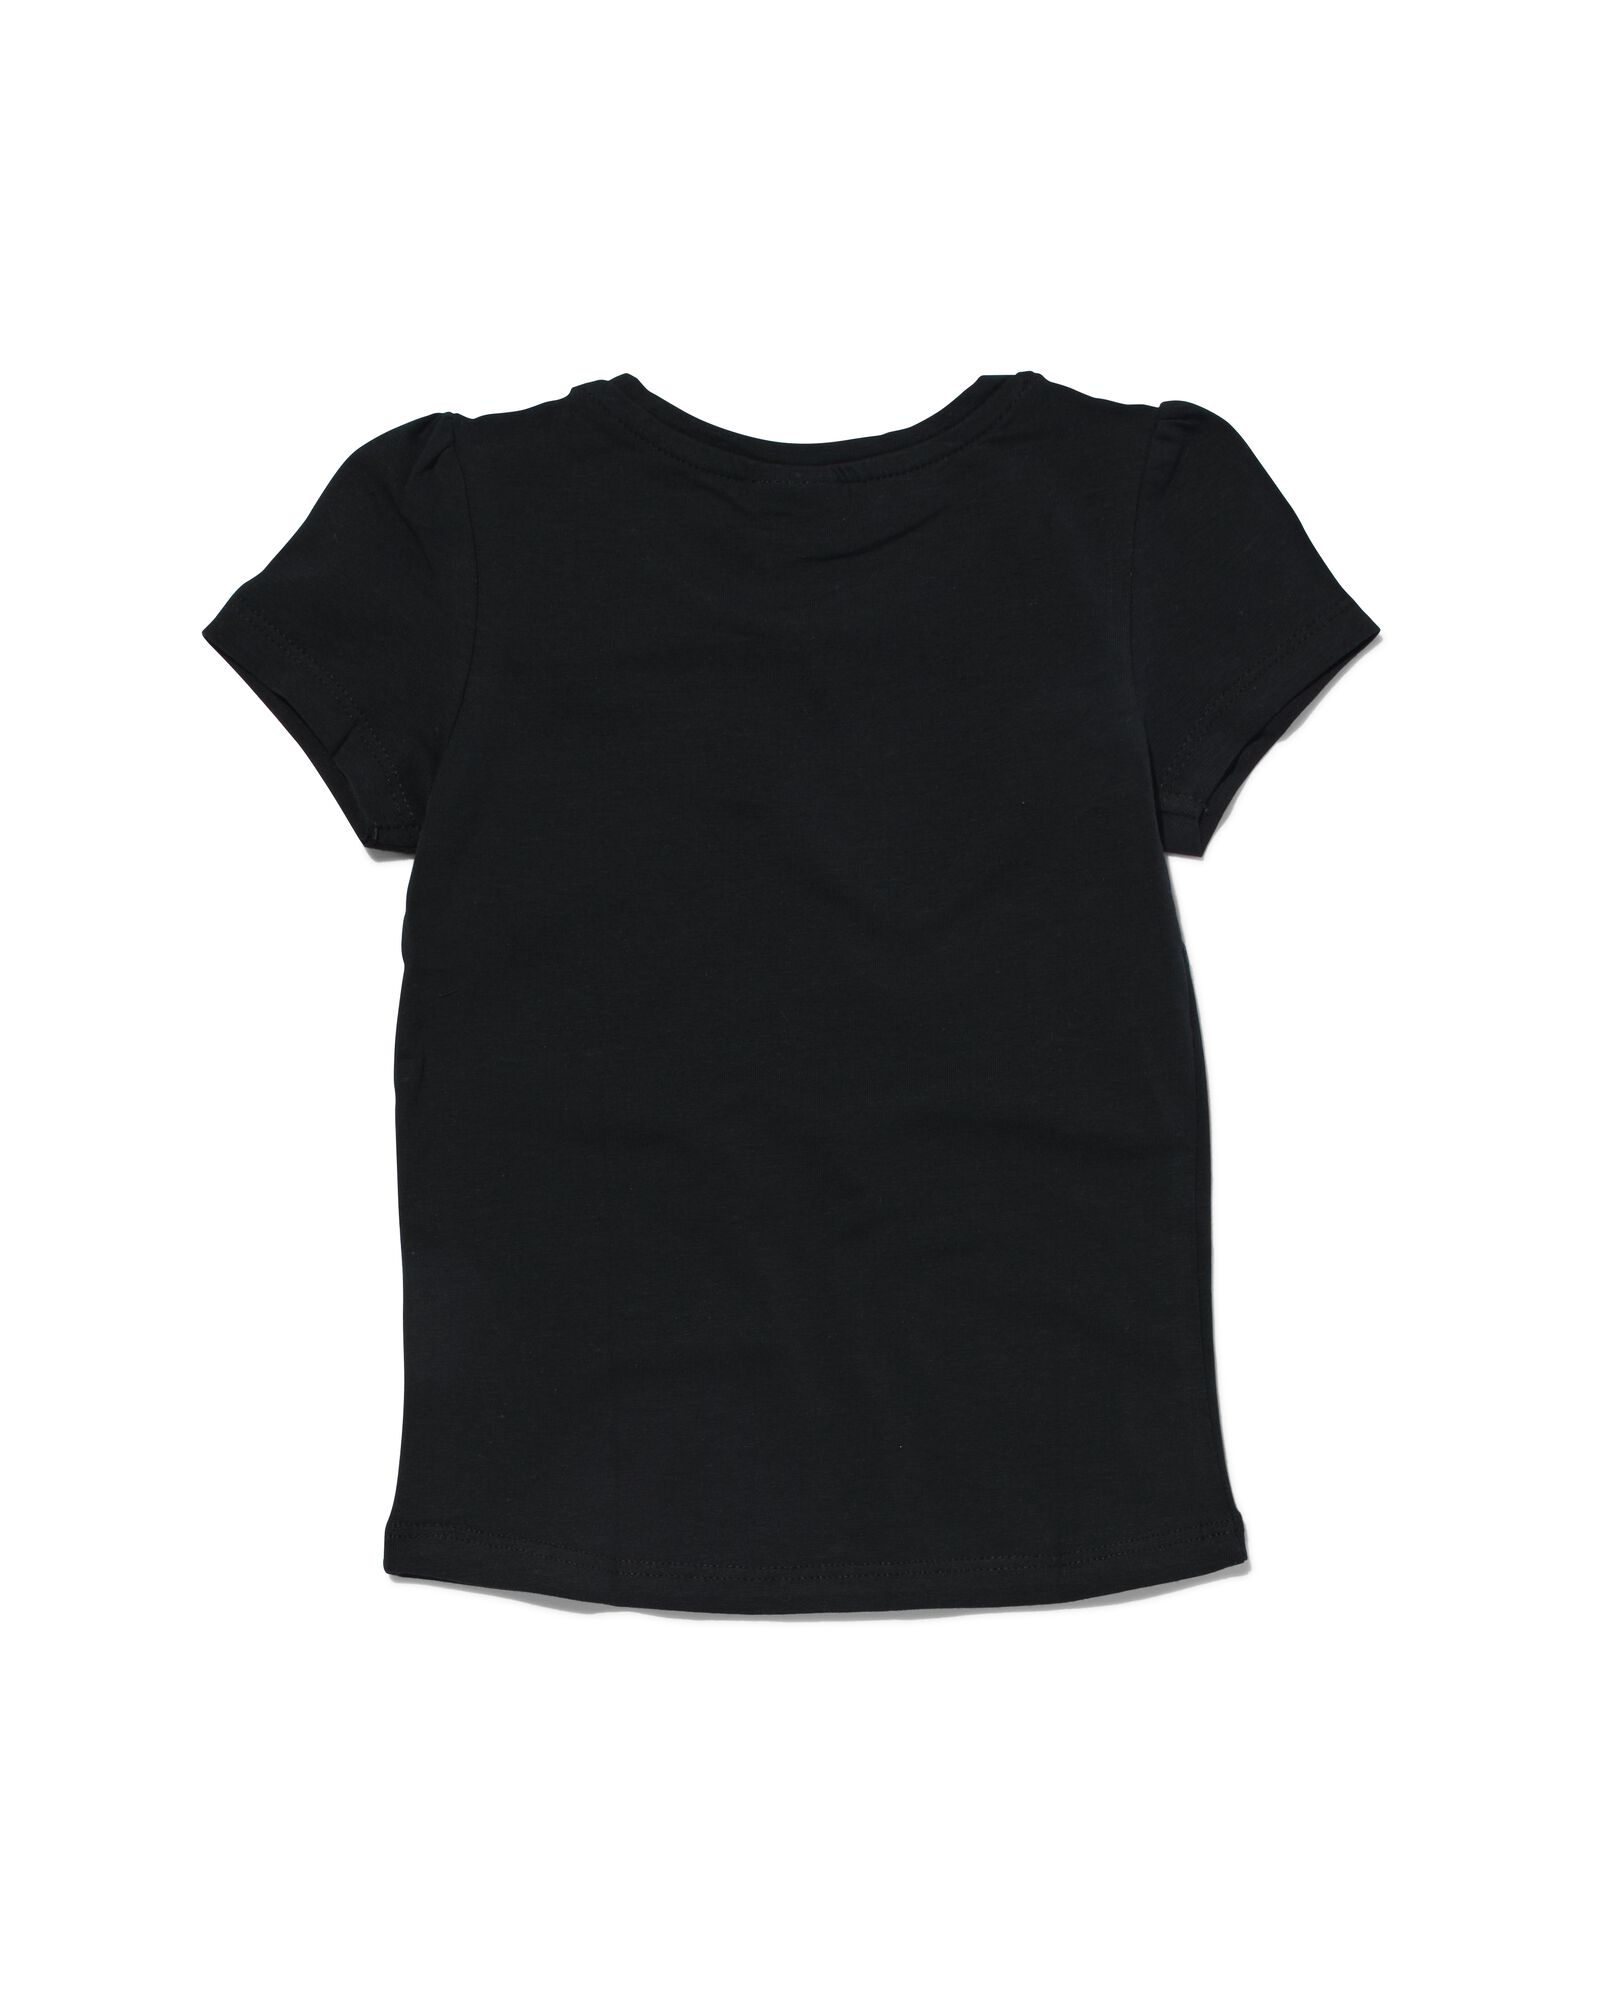 kinder t-shirt zwart 146/152 - 30843955 - HEMA